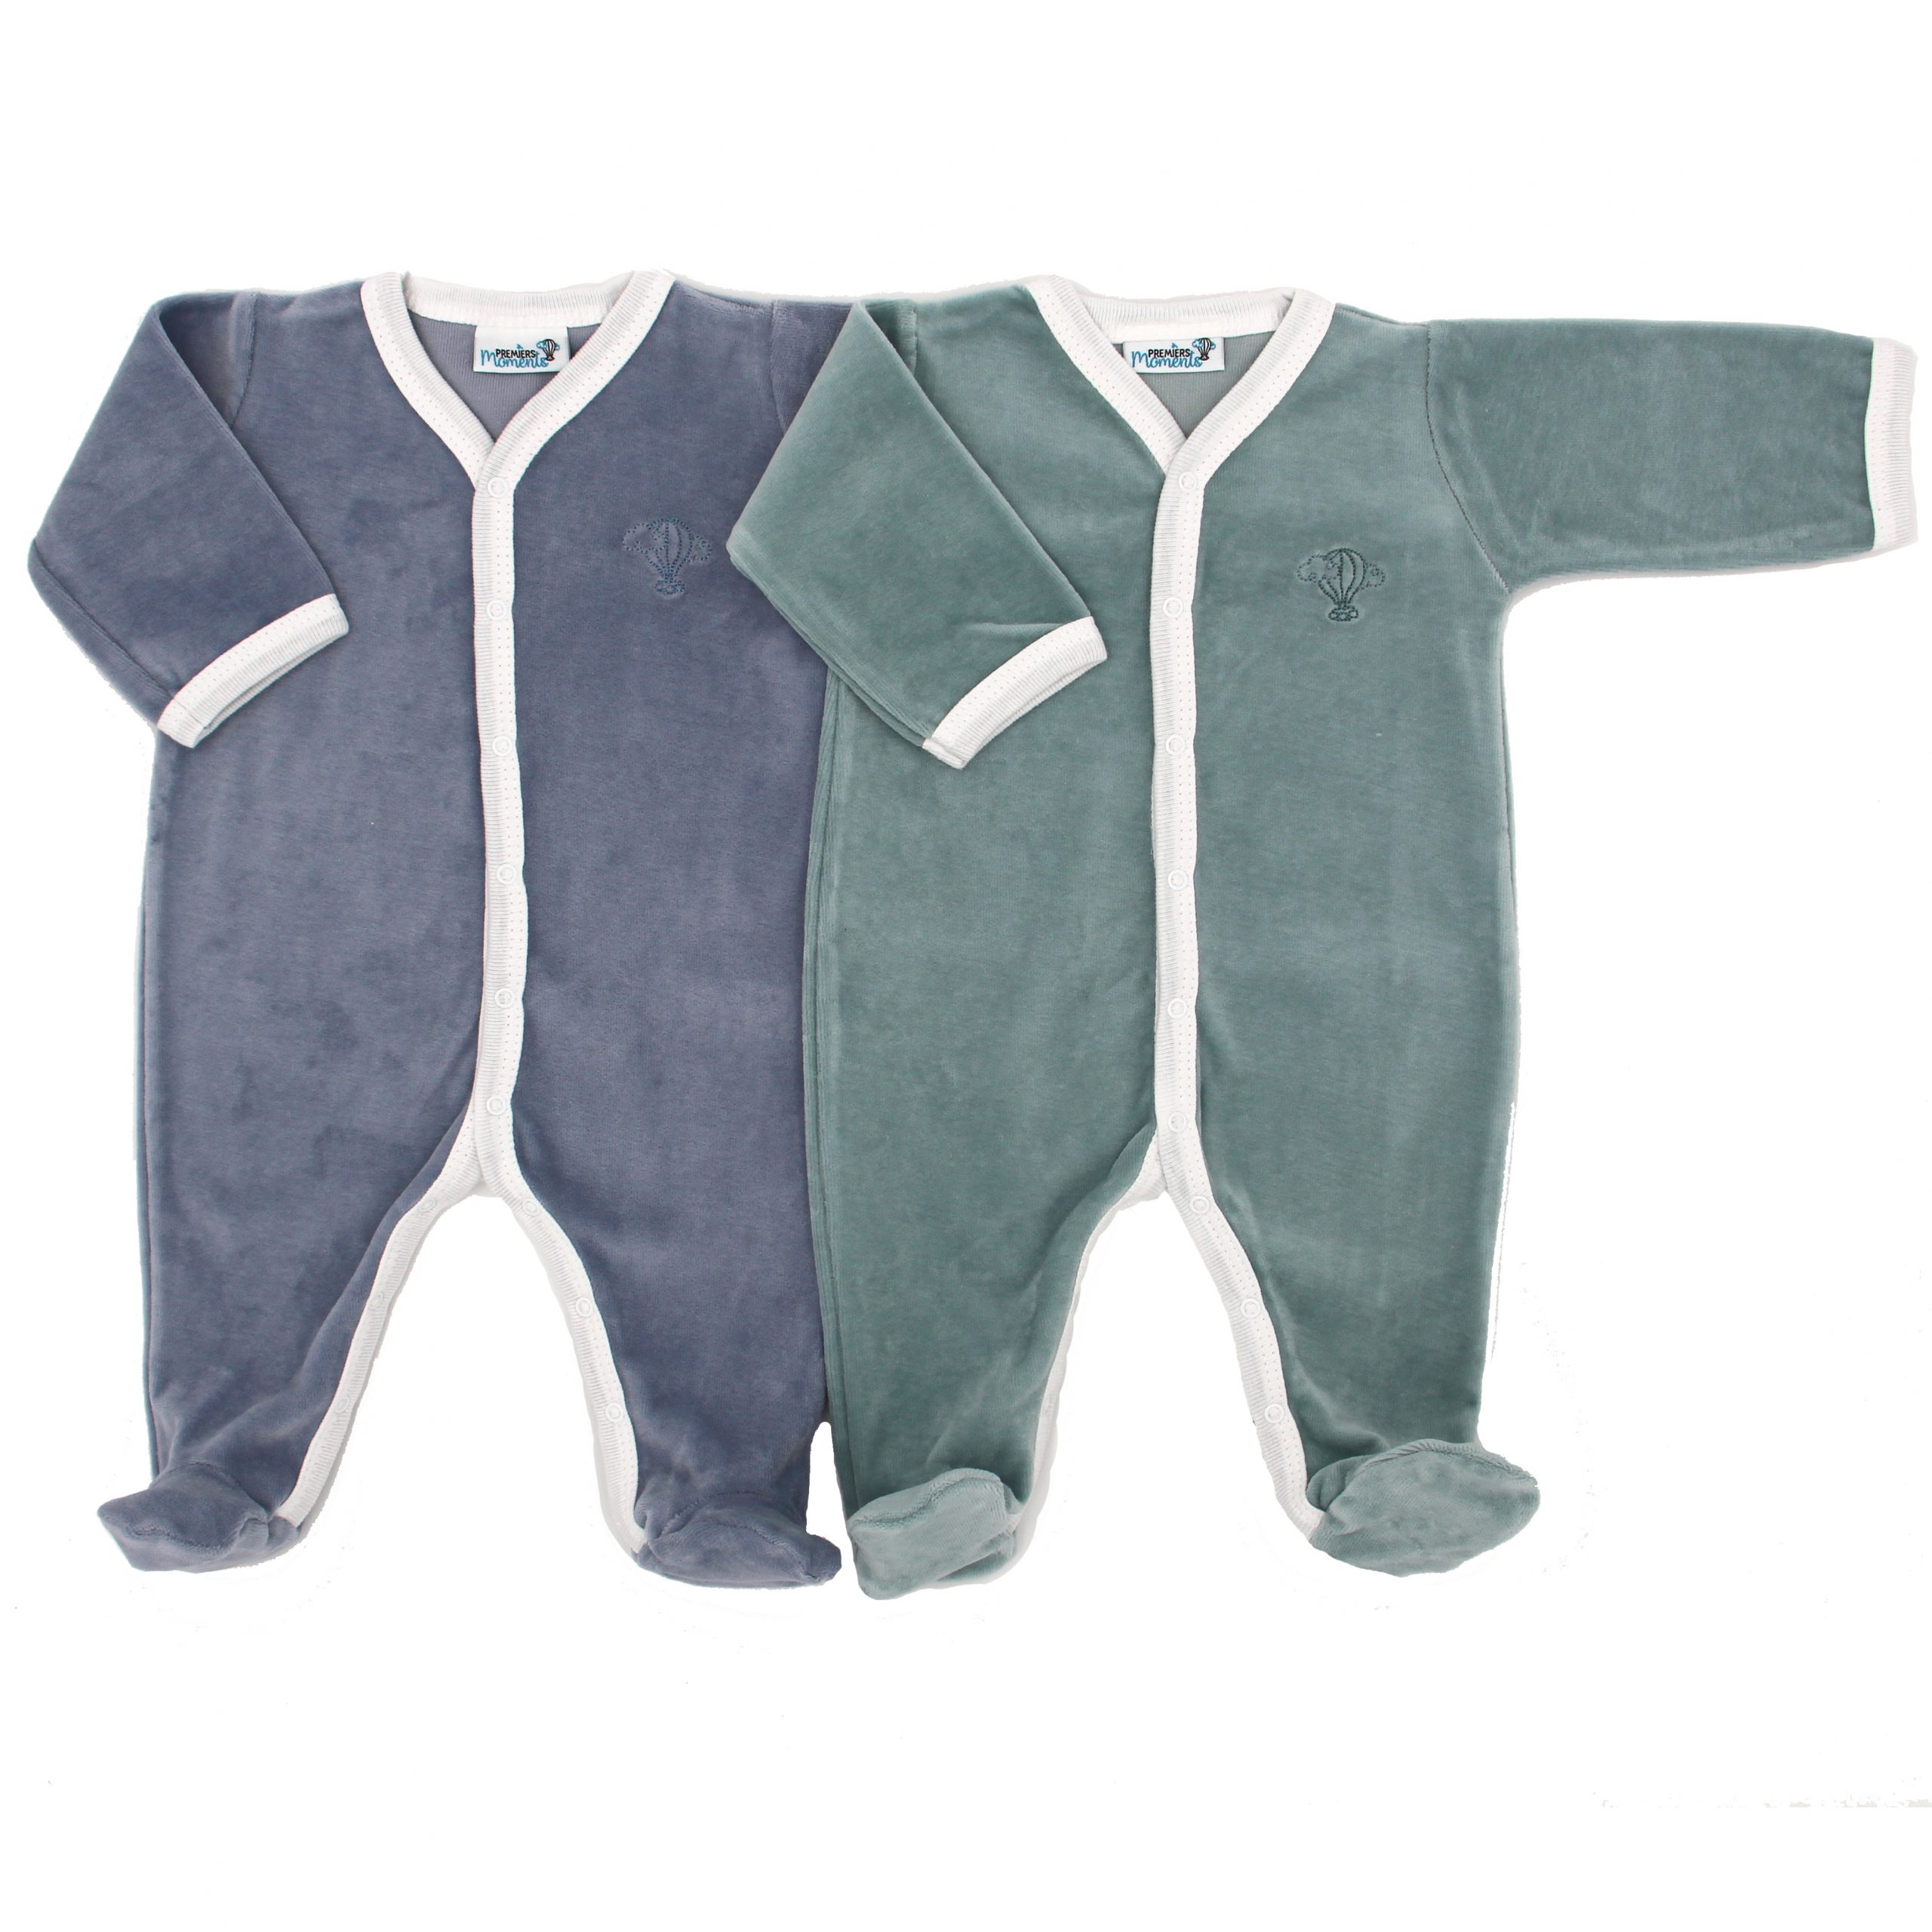 Pyjama bébé fille corail 100% coton 1 mois TEX BABY : le lot de 2